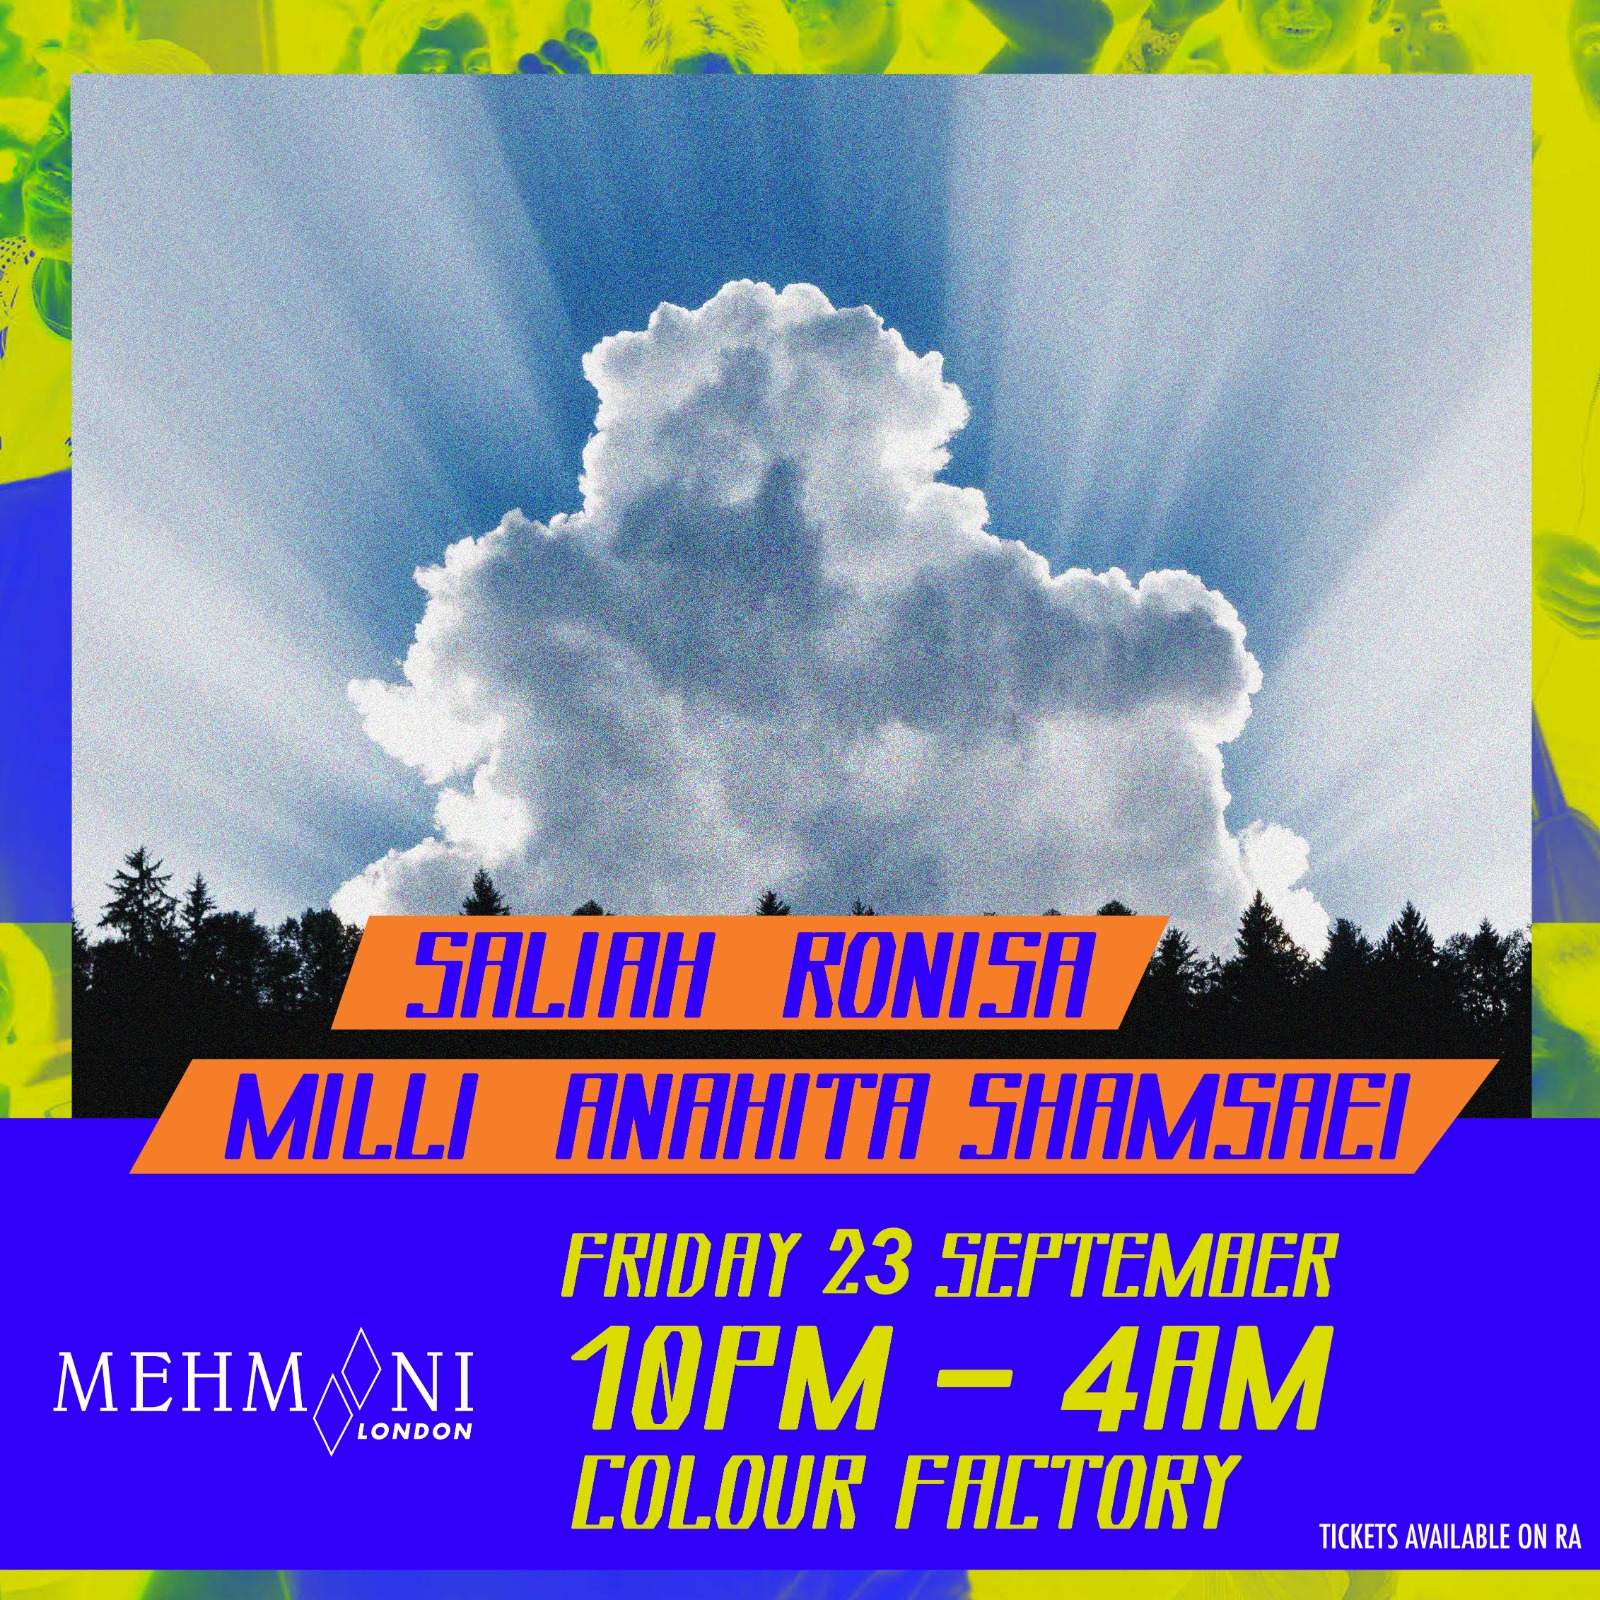 Mehmooni London feat. Saliah, Ronisa, Milli & Anahita Shamsaei - Flyer front